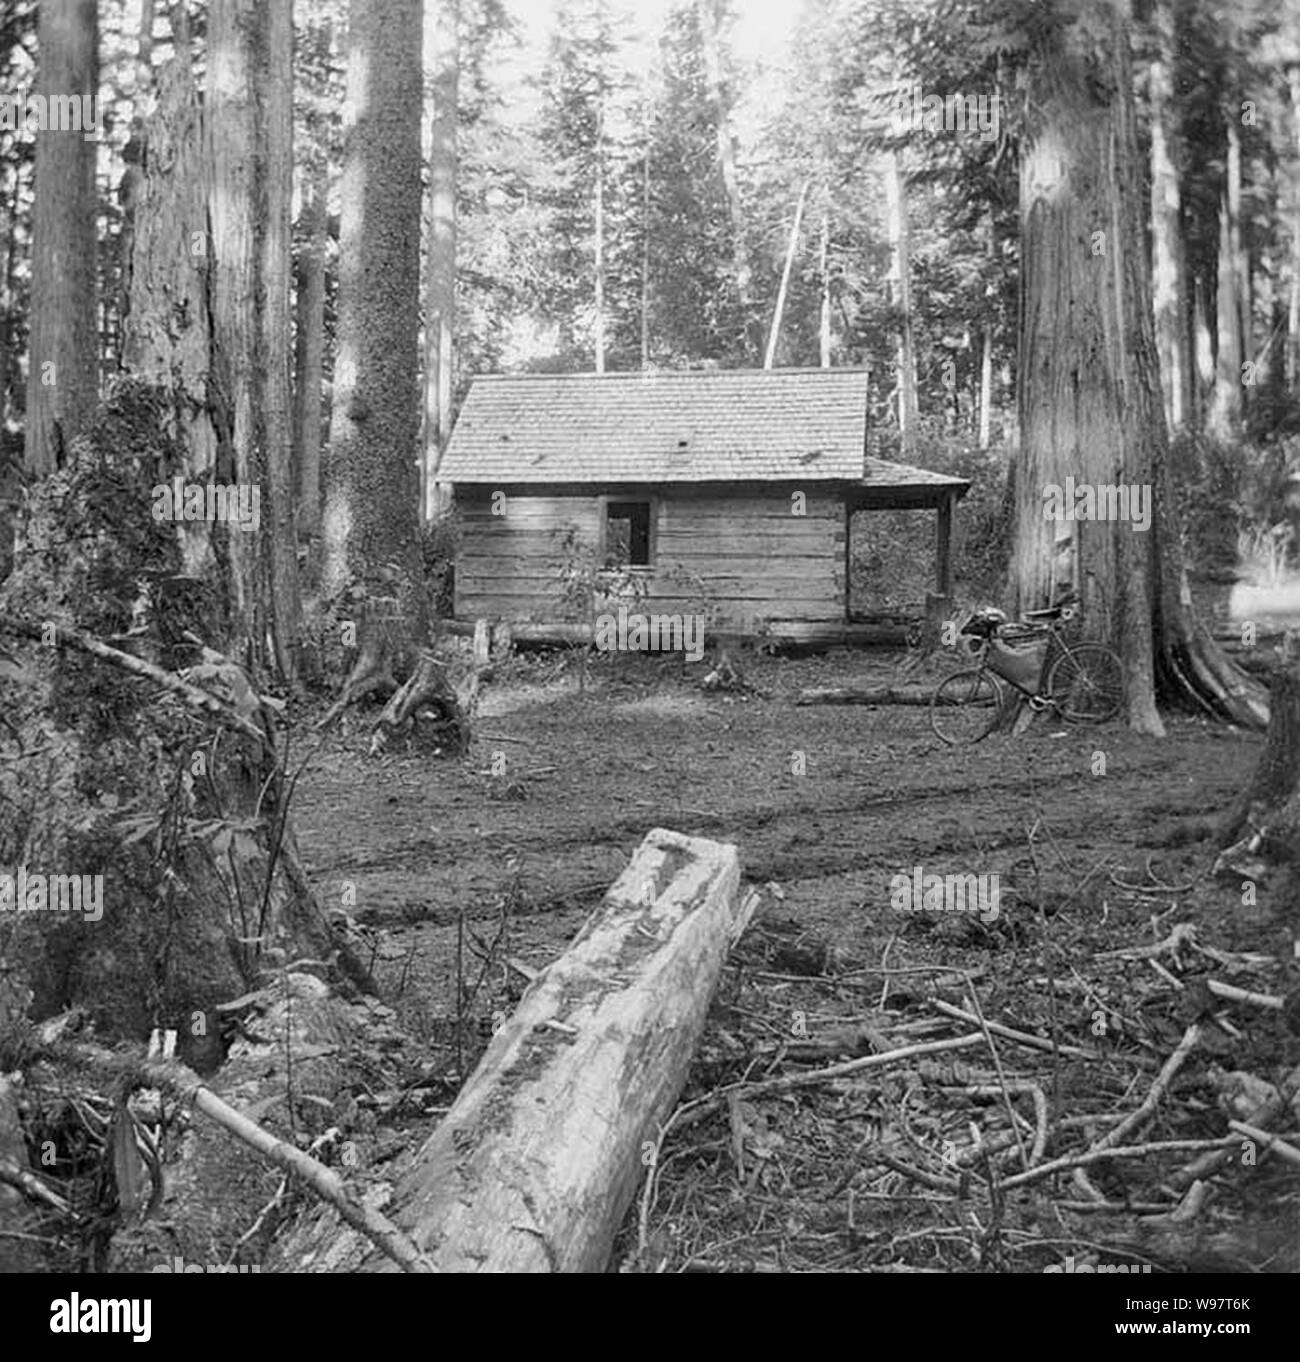 Cabine déserte, Snoqualmie Pass, 15 octobre 1896 (137) WAITE. Banque D'Images